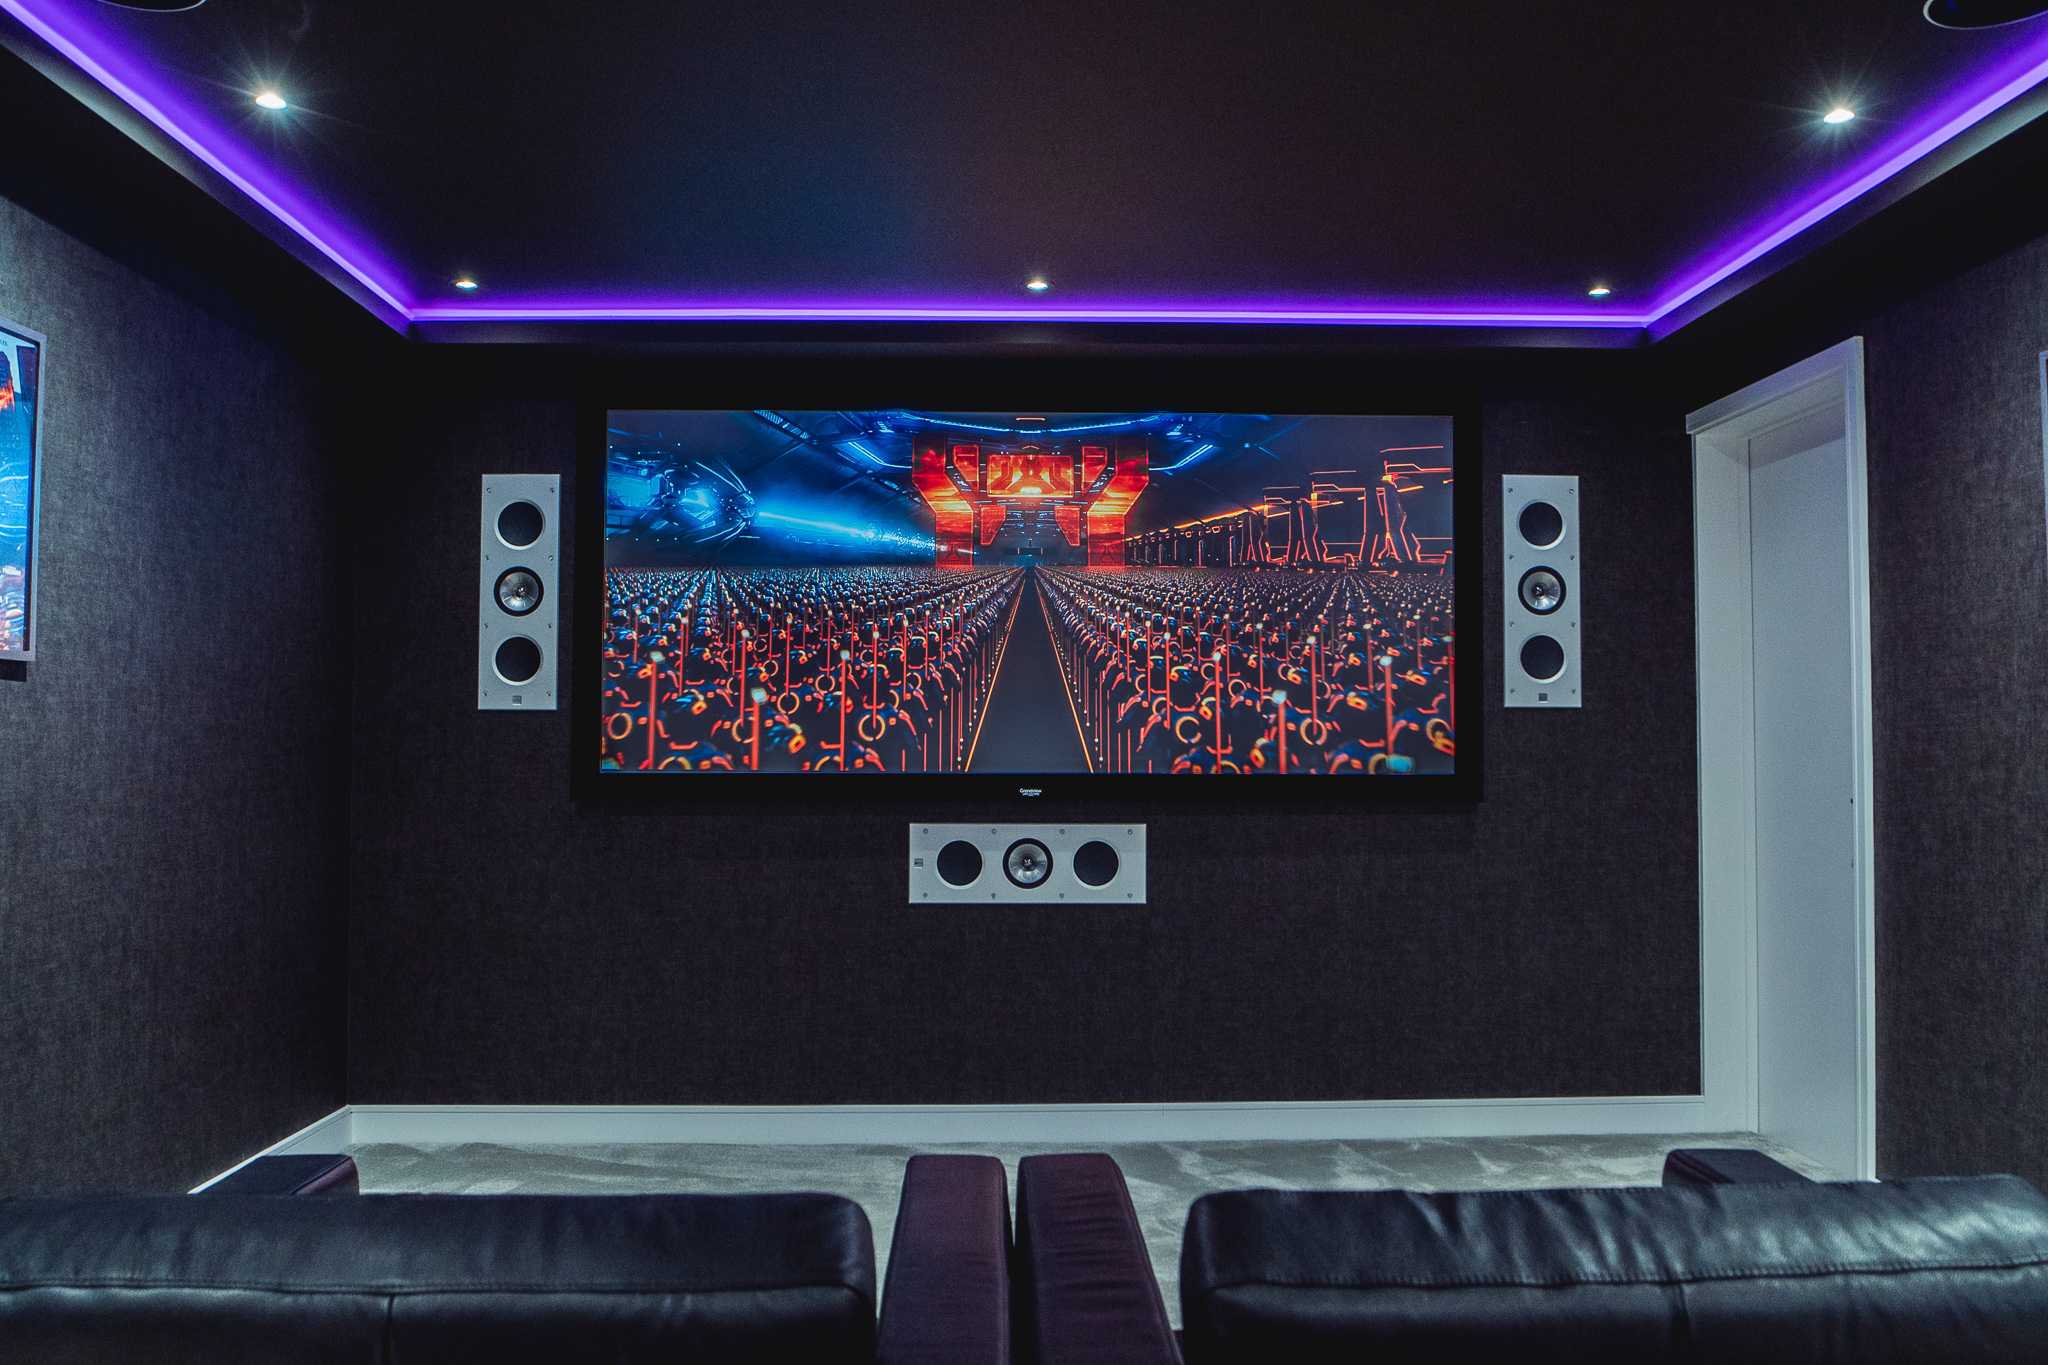 Demo home cinema room installed by Modal AV